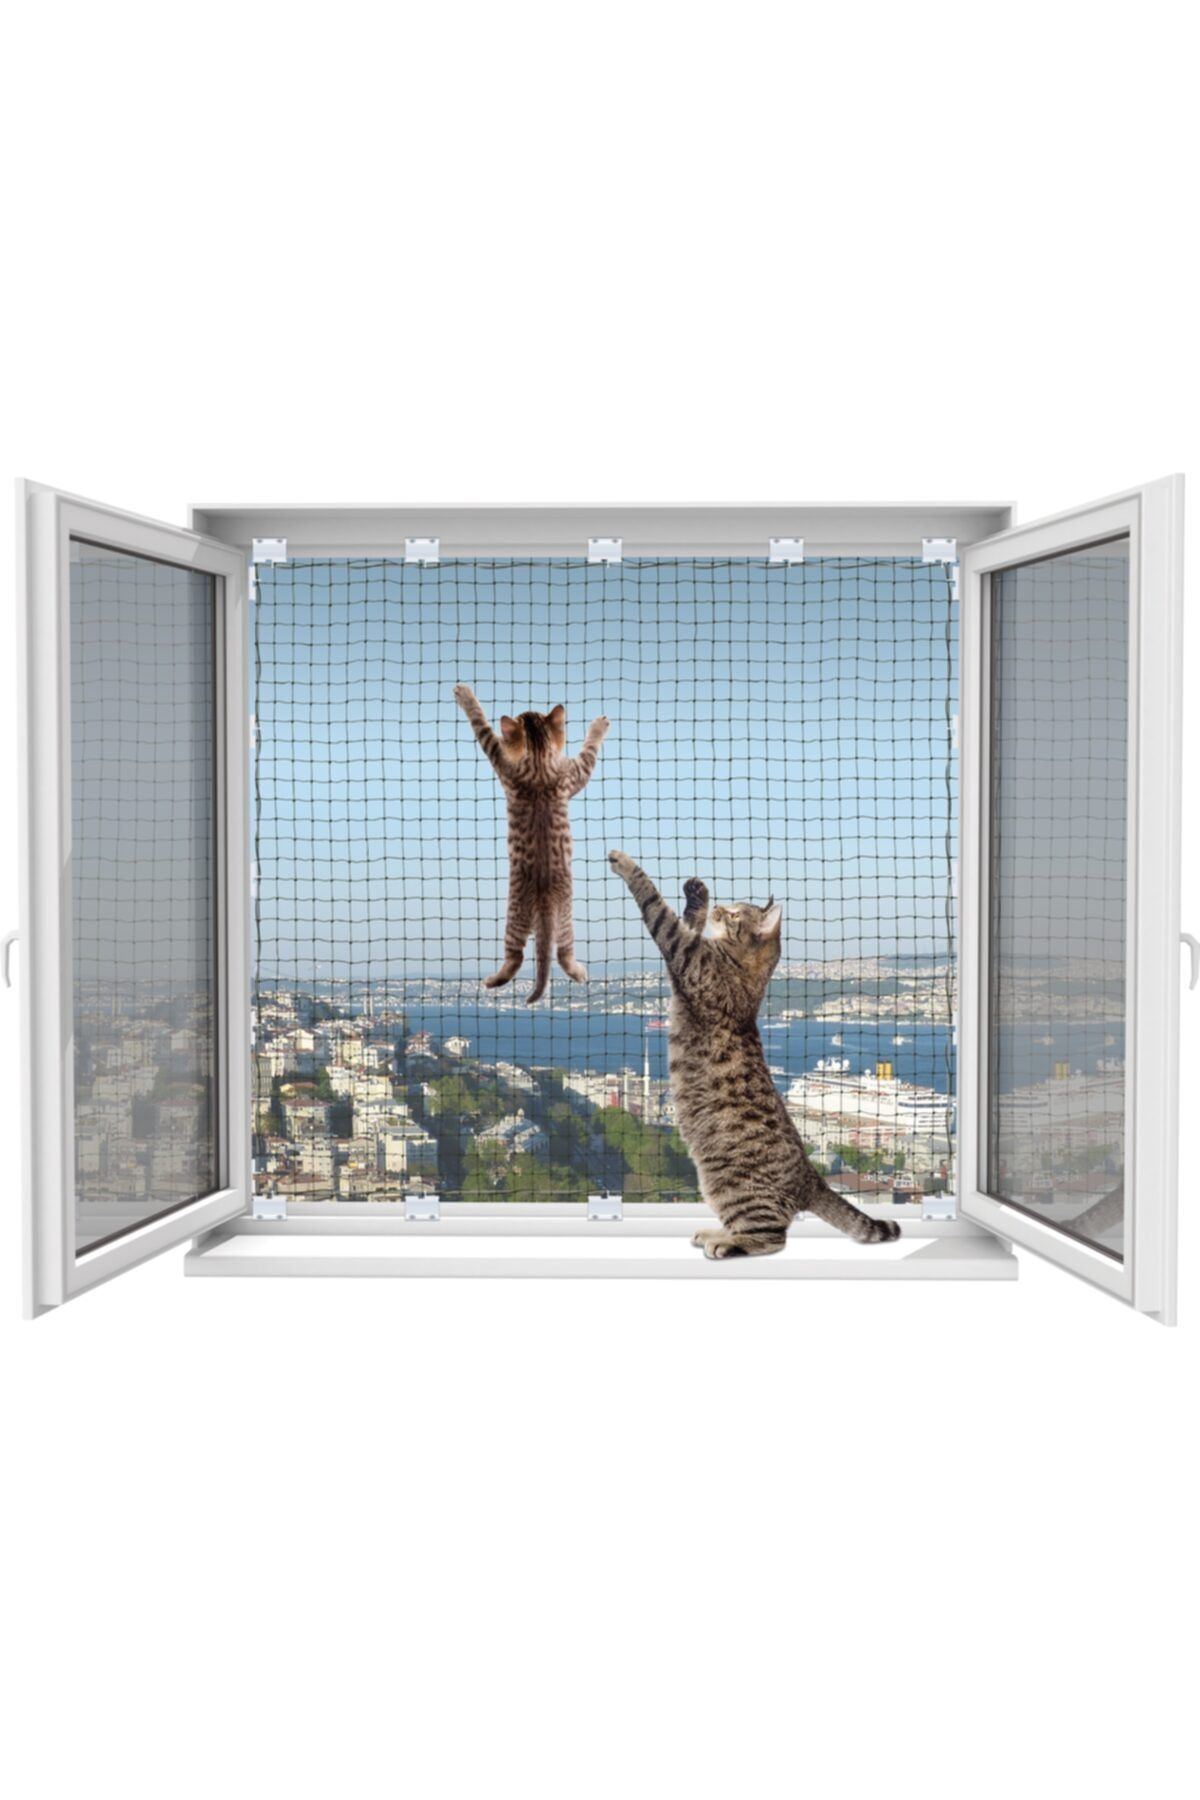 WINBLOCK Pets – Kediler Için Pencere Güvenlik Ağı (80 X 140 CM YE KADAR) – Tek Kanat Kutu